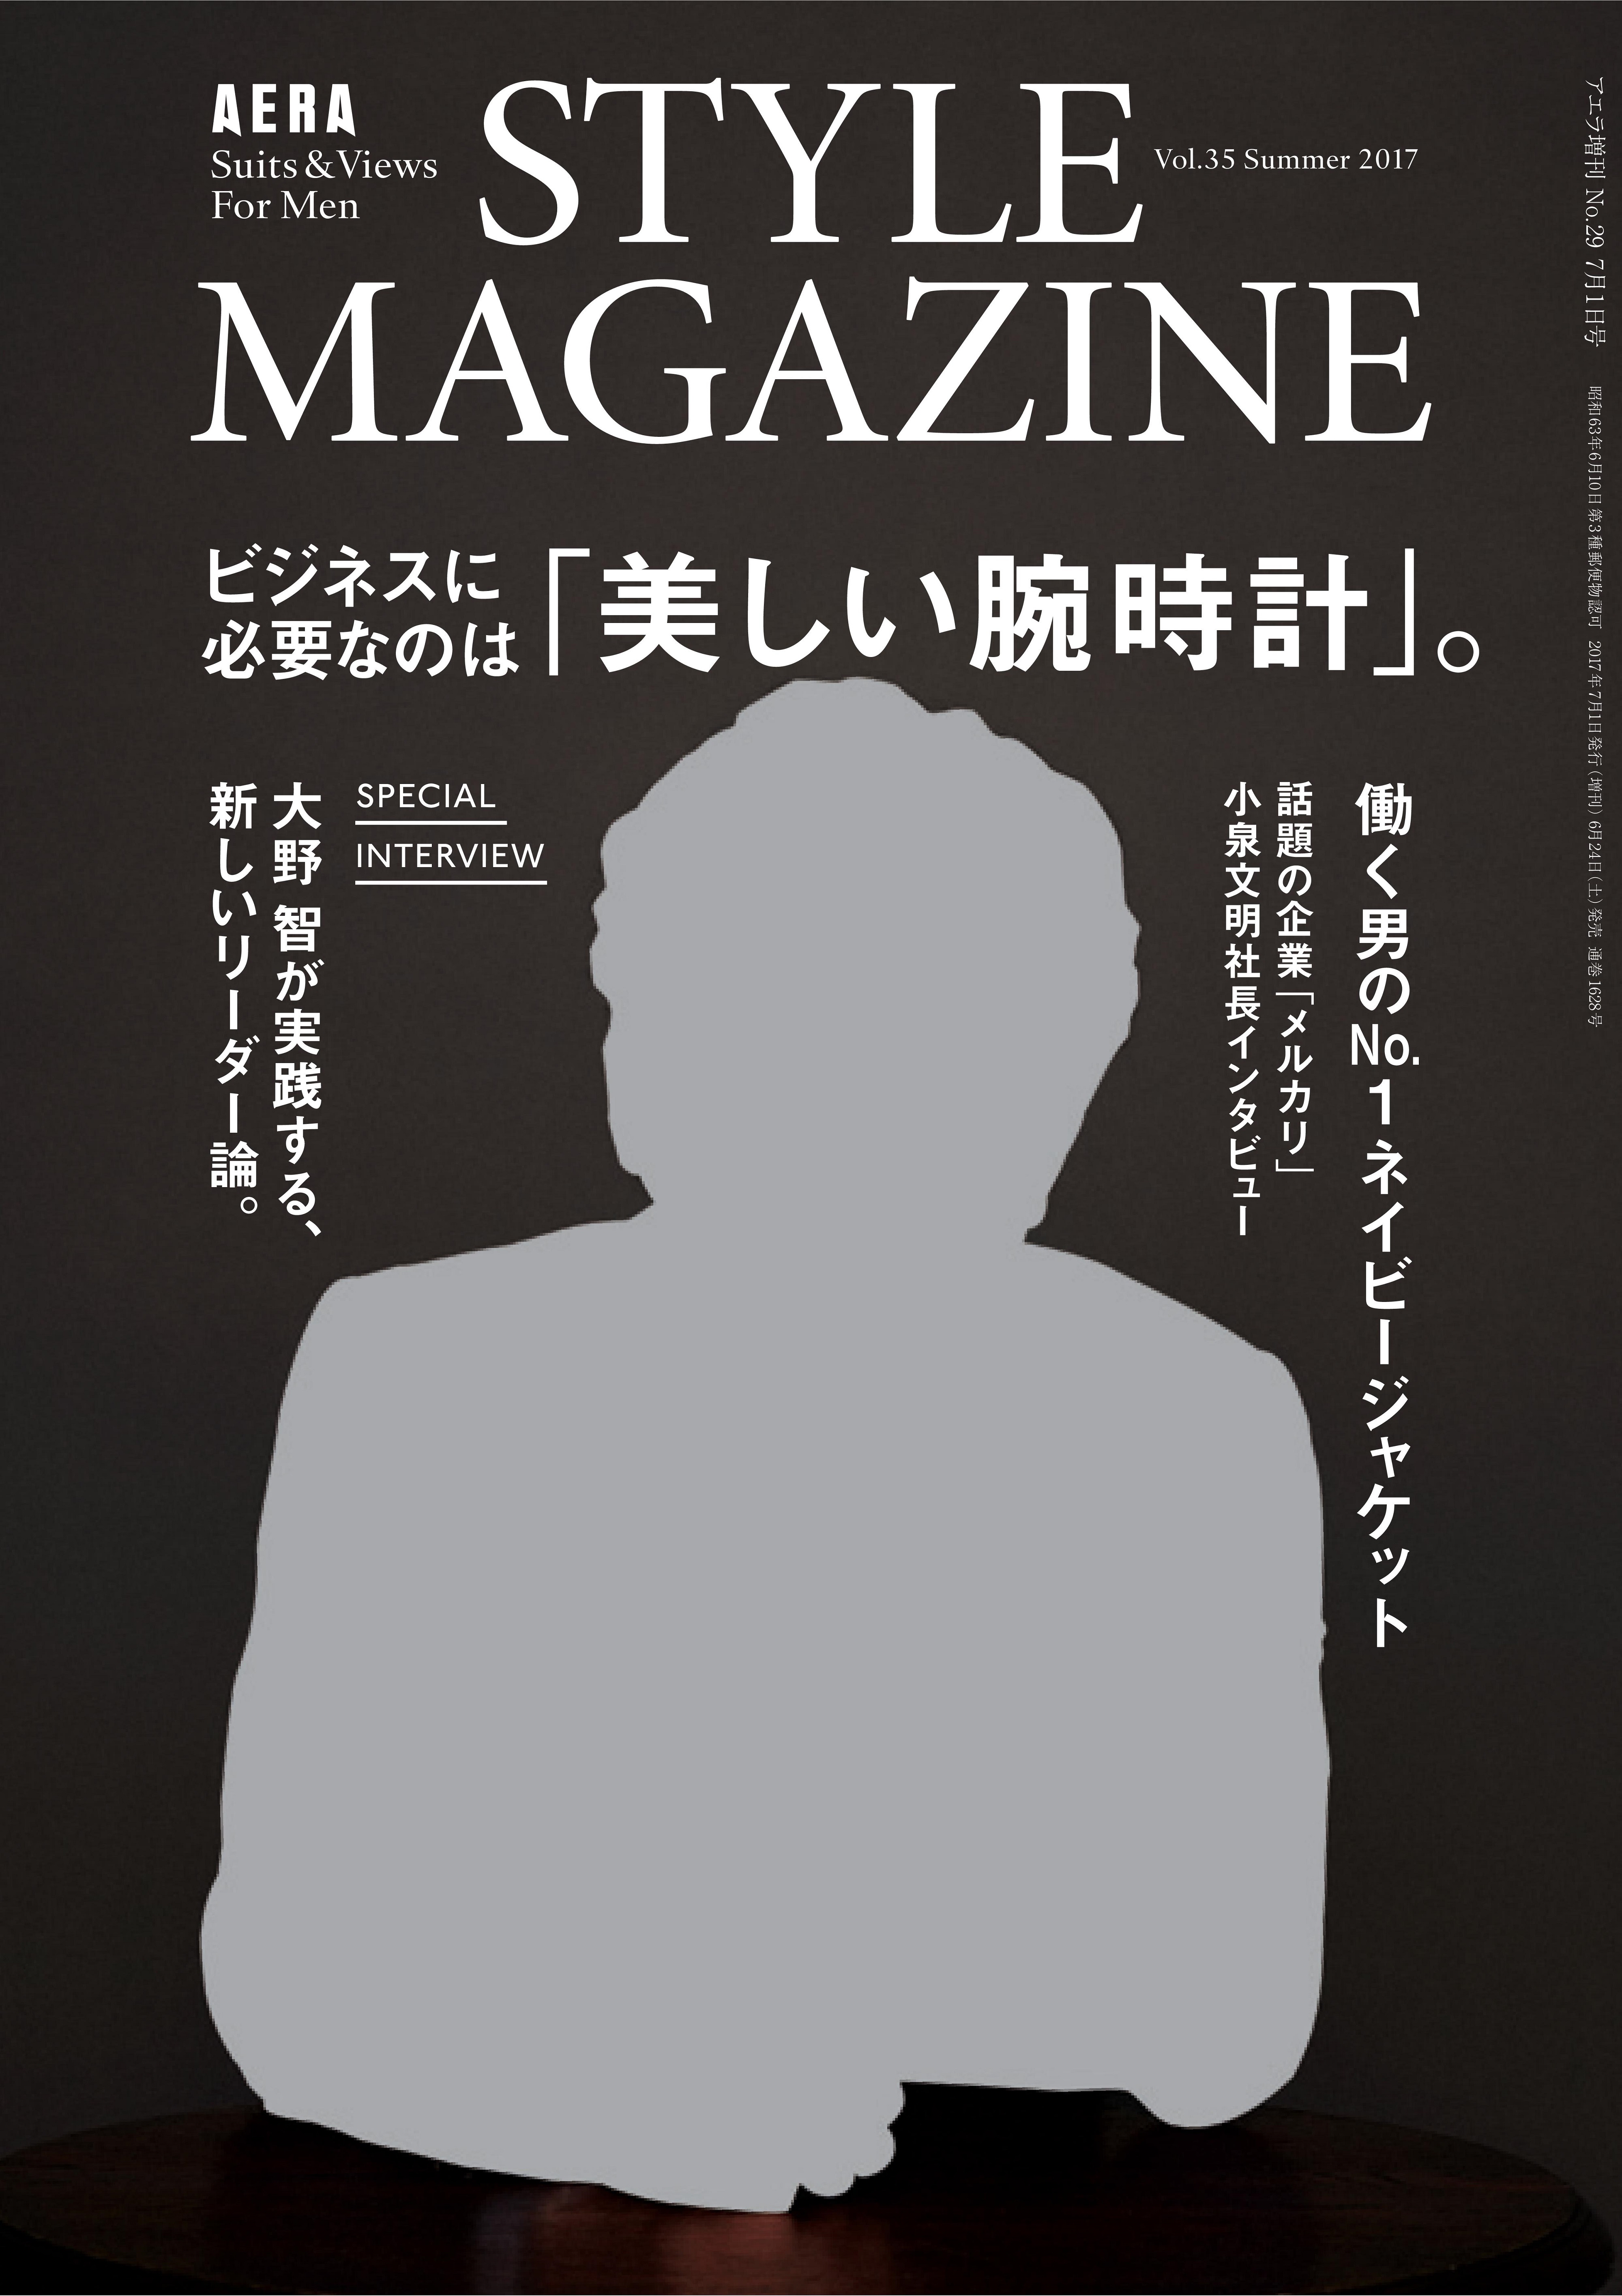 嵐 大野智さんが アエラスタイルマガジン 表紙 特集に登場 株式会社朝日新聞出版のプレスリリース